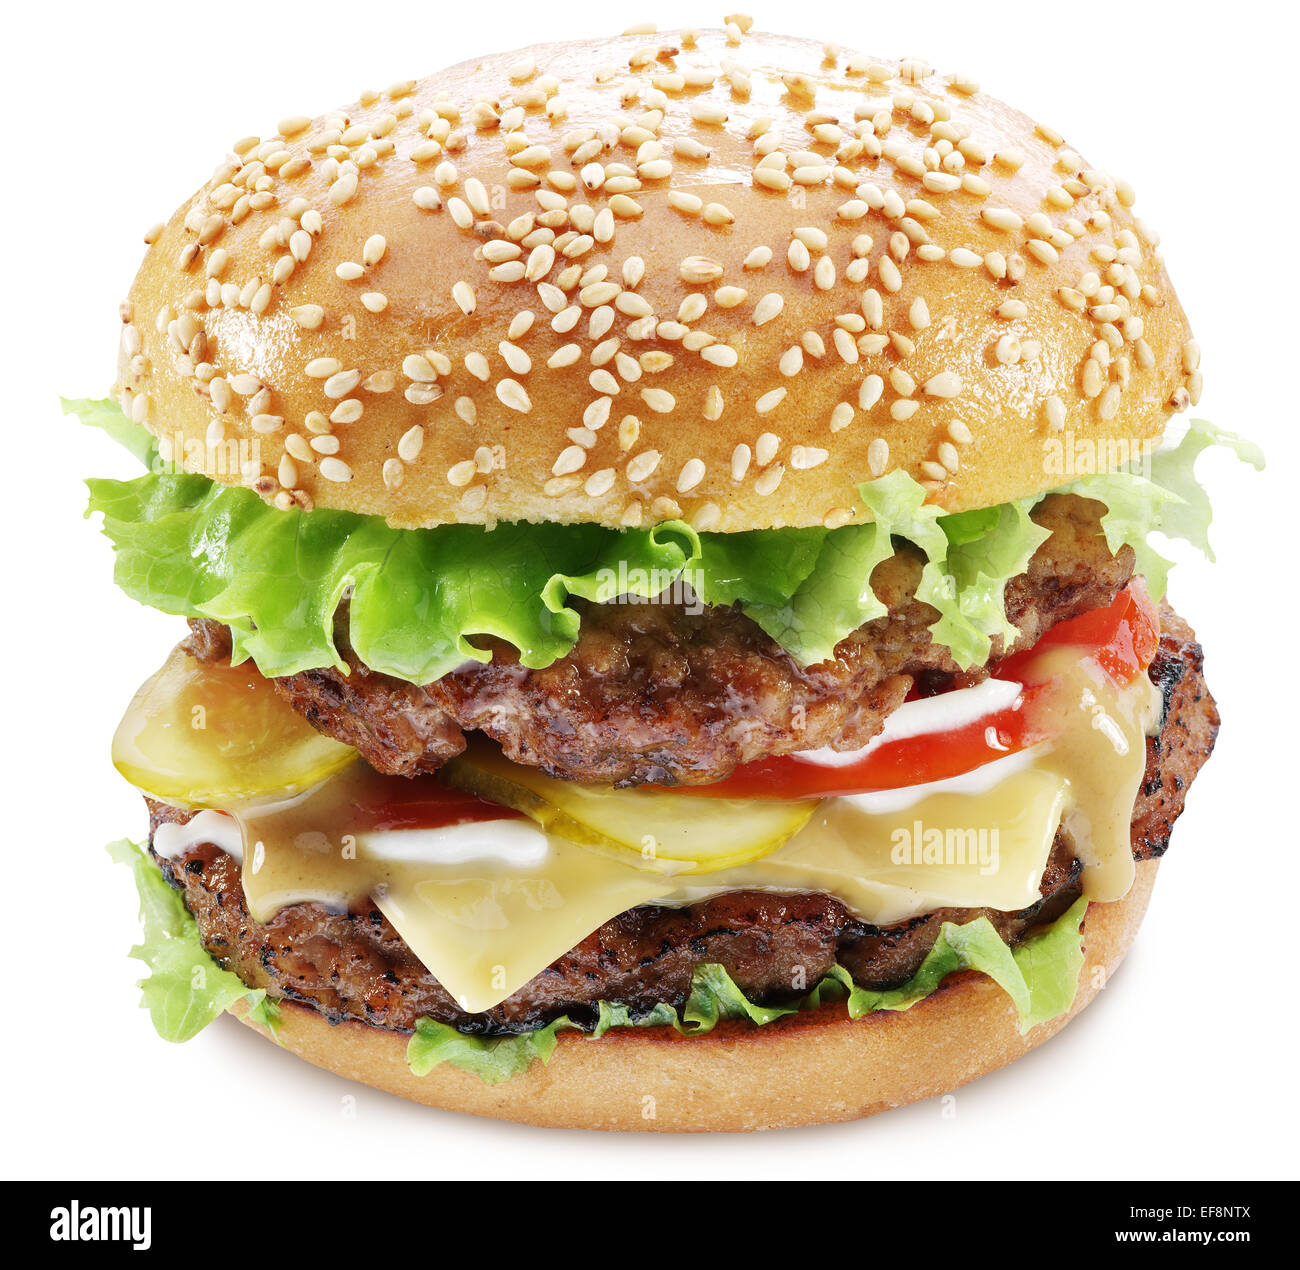 Hamburger isoliert auf einem weißen Hintergrund. Stockfoto